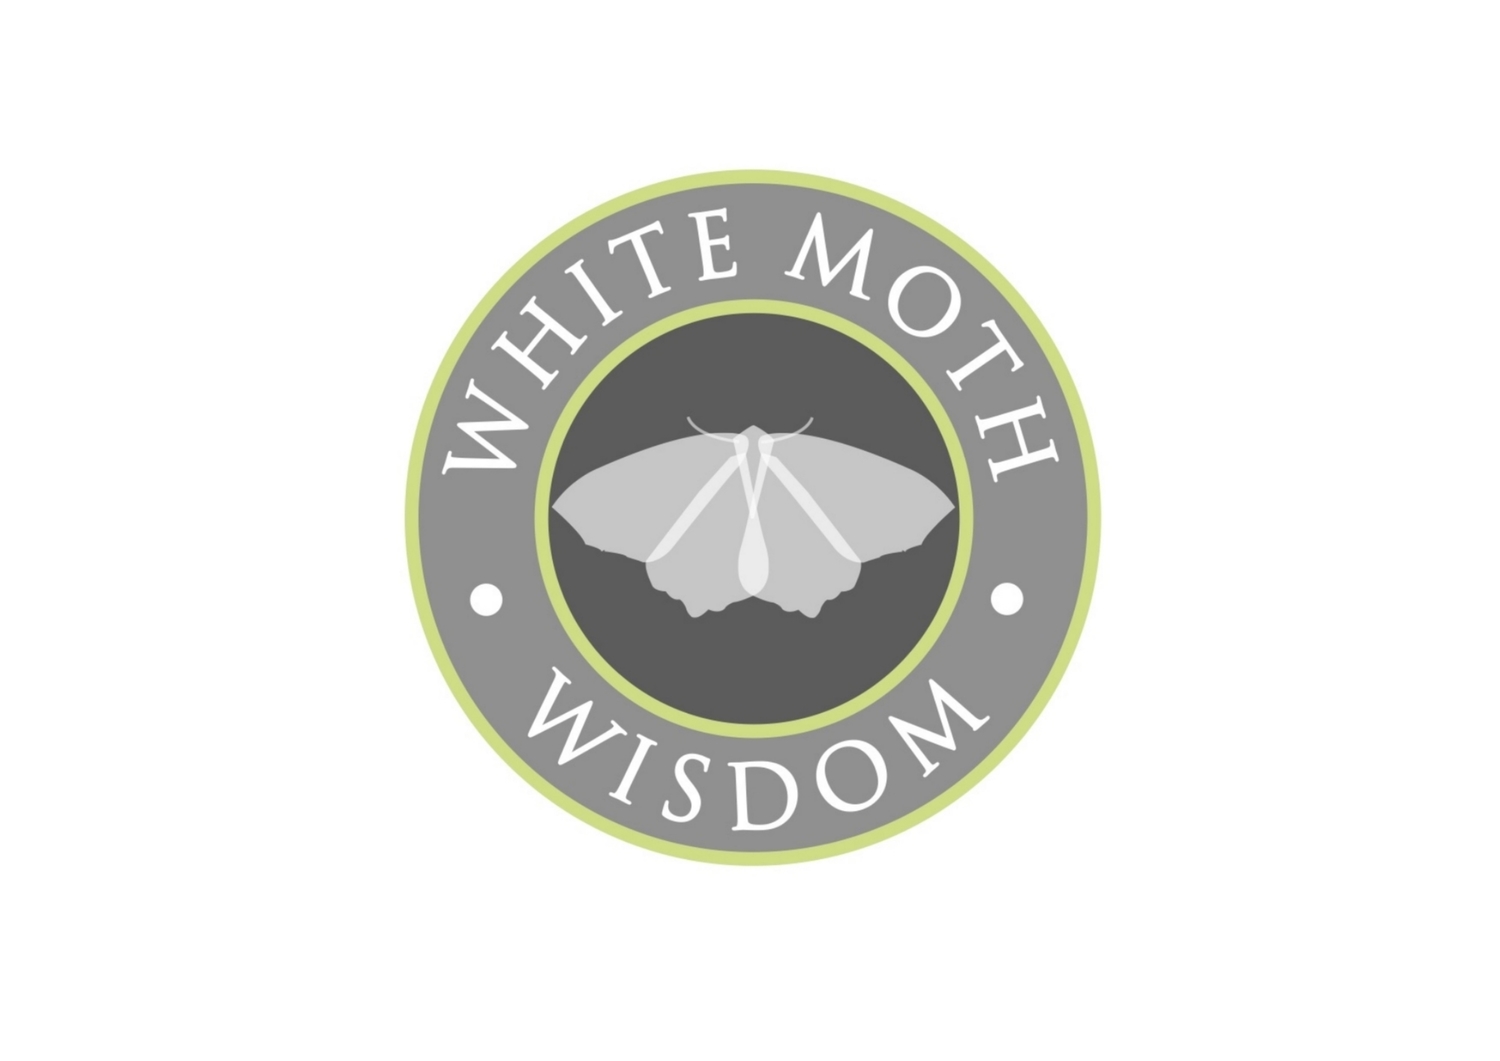 White Moth Wisdom